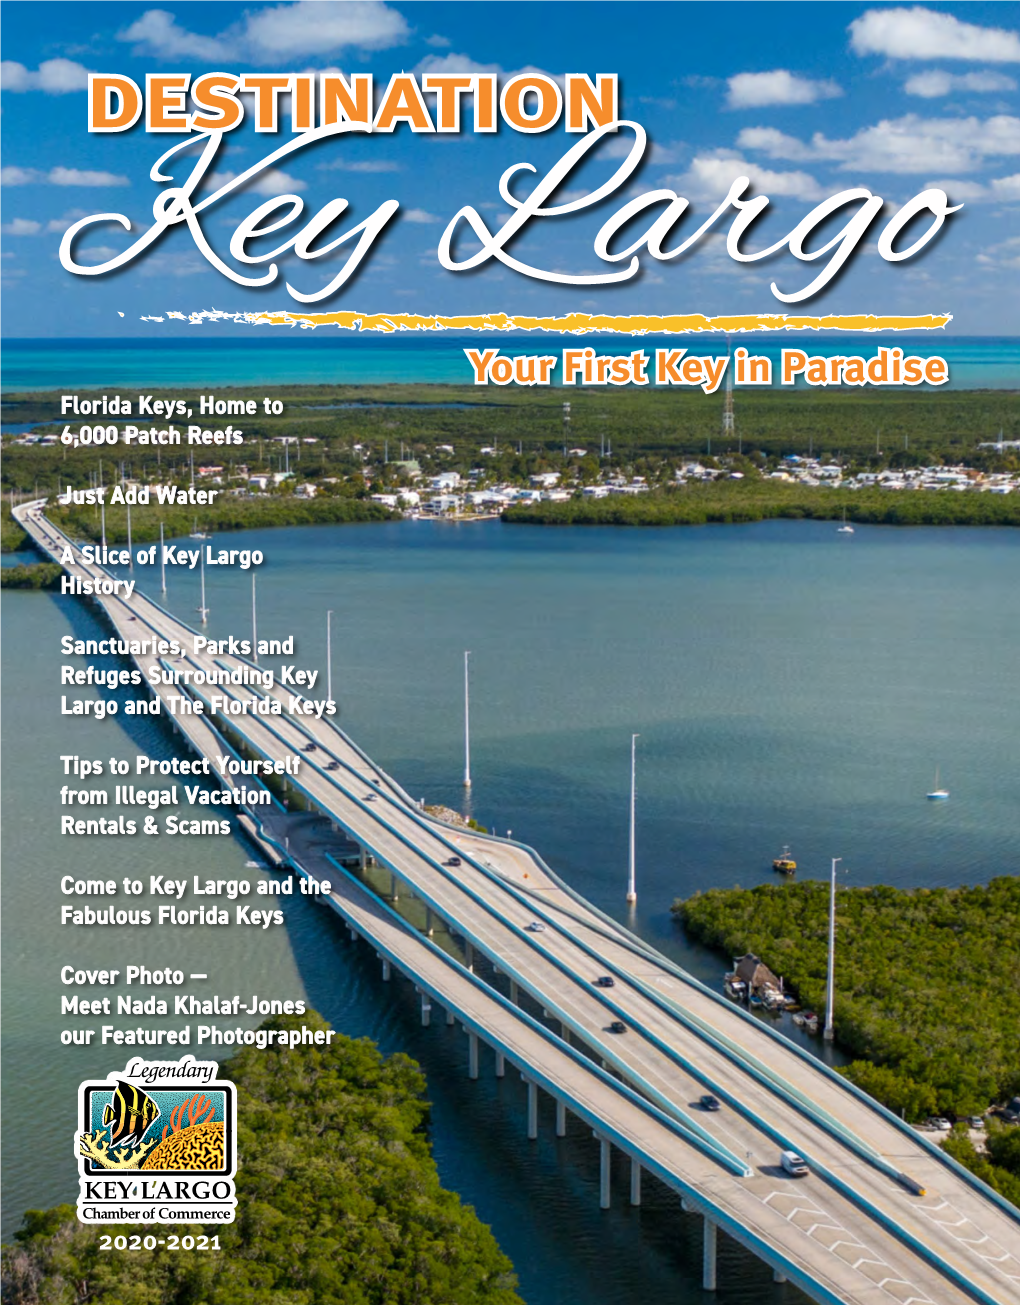 Key Largo History